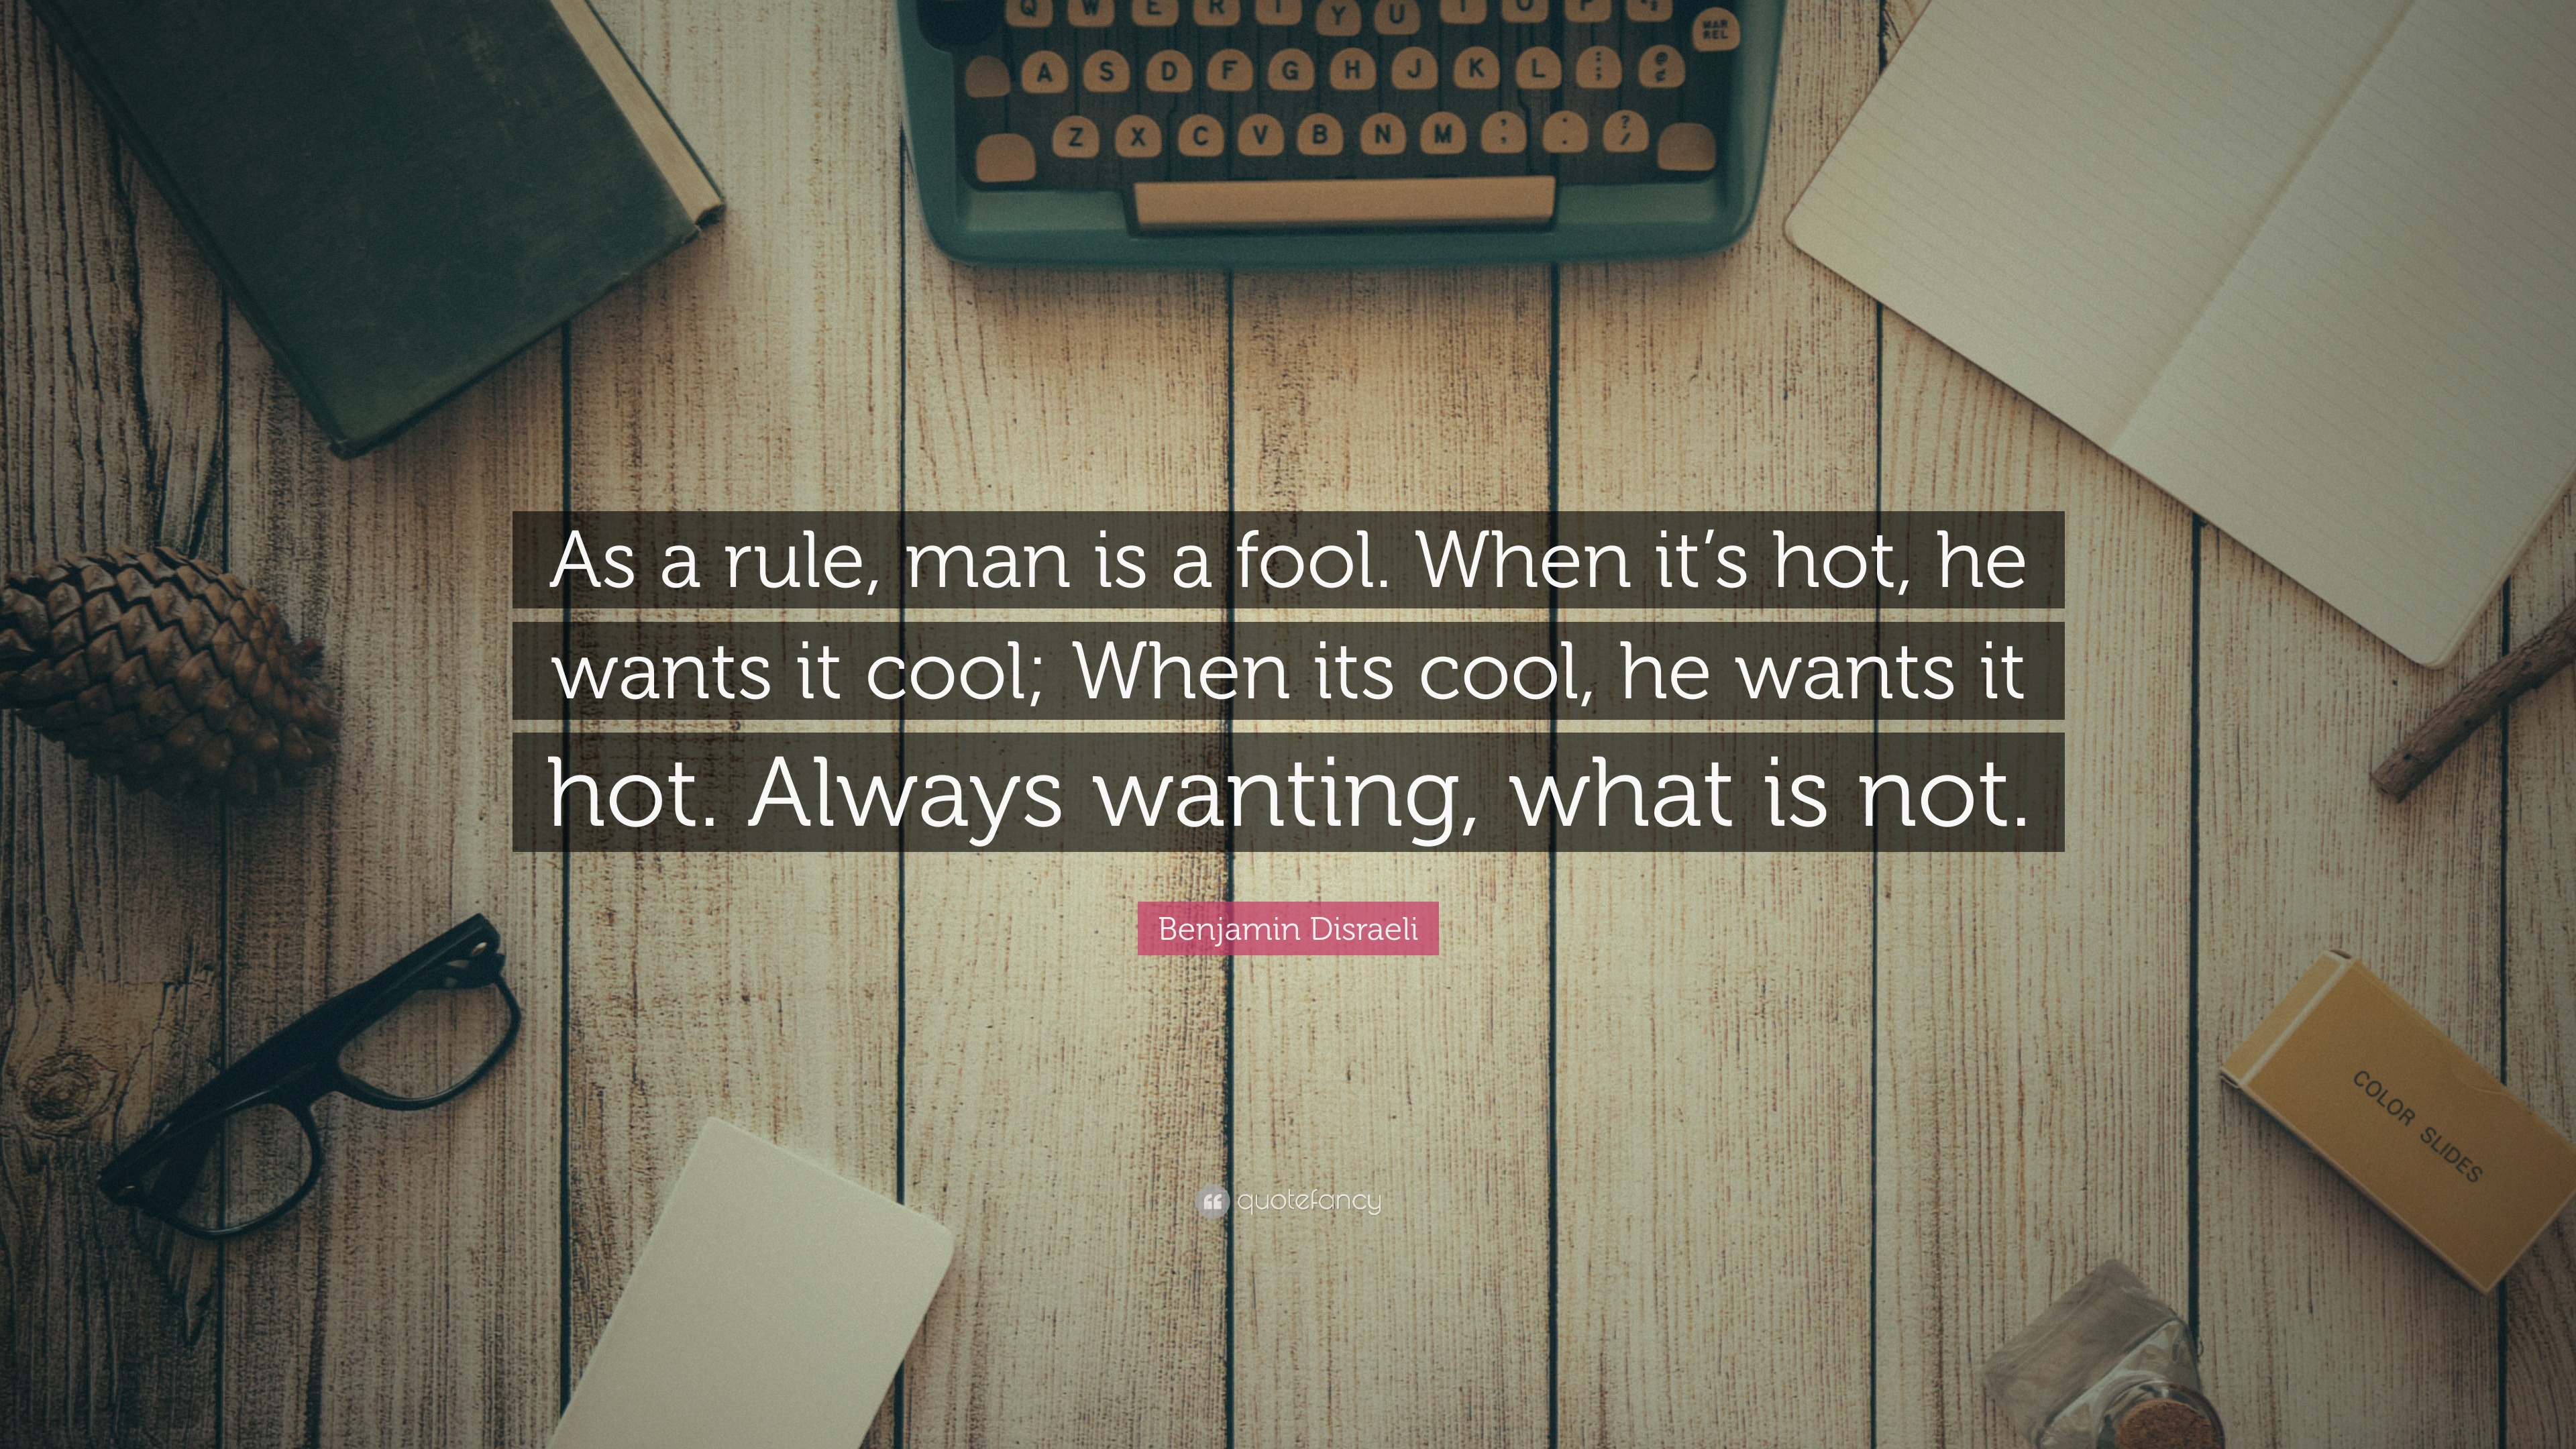 Benjamin Disraeli Quote: “As a rule, man is a fool. When it's hot, he wants  it